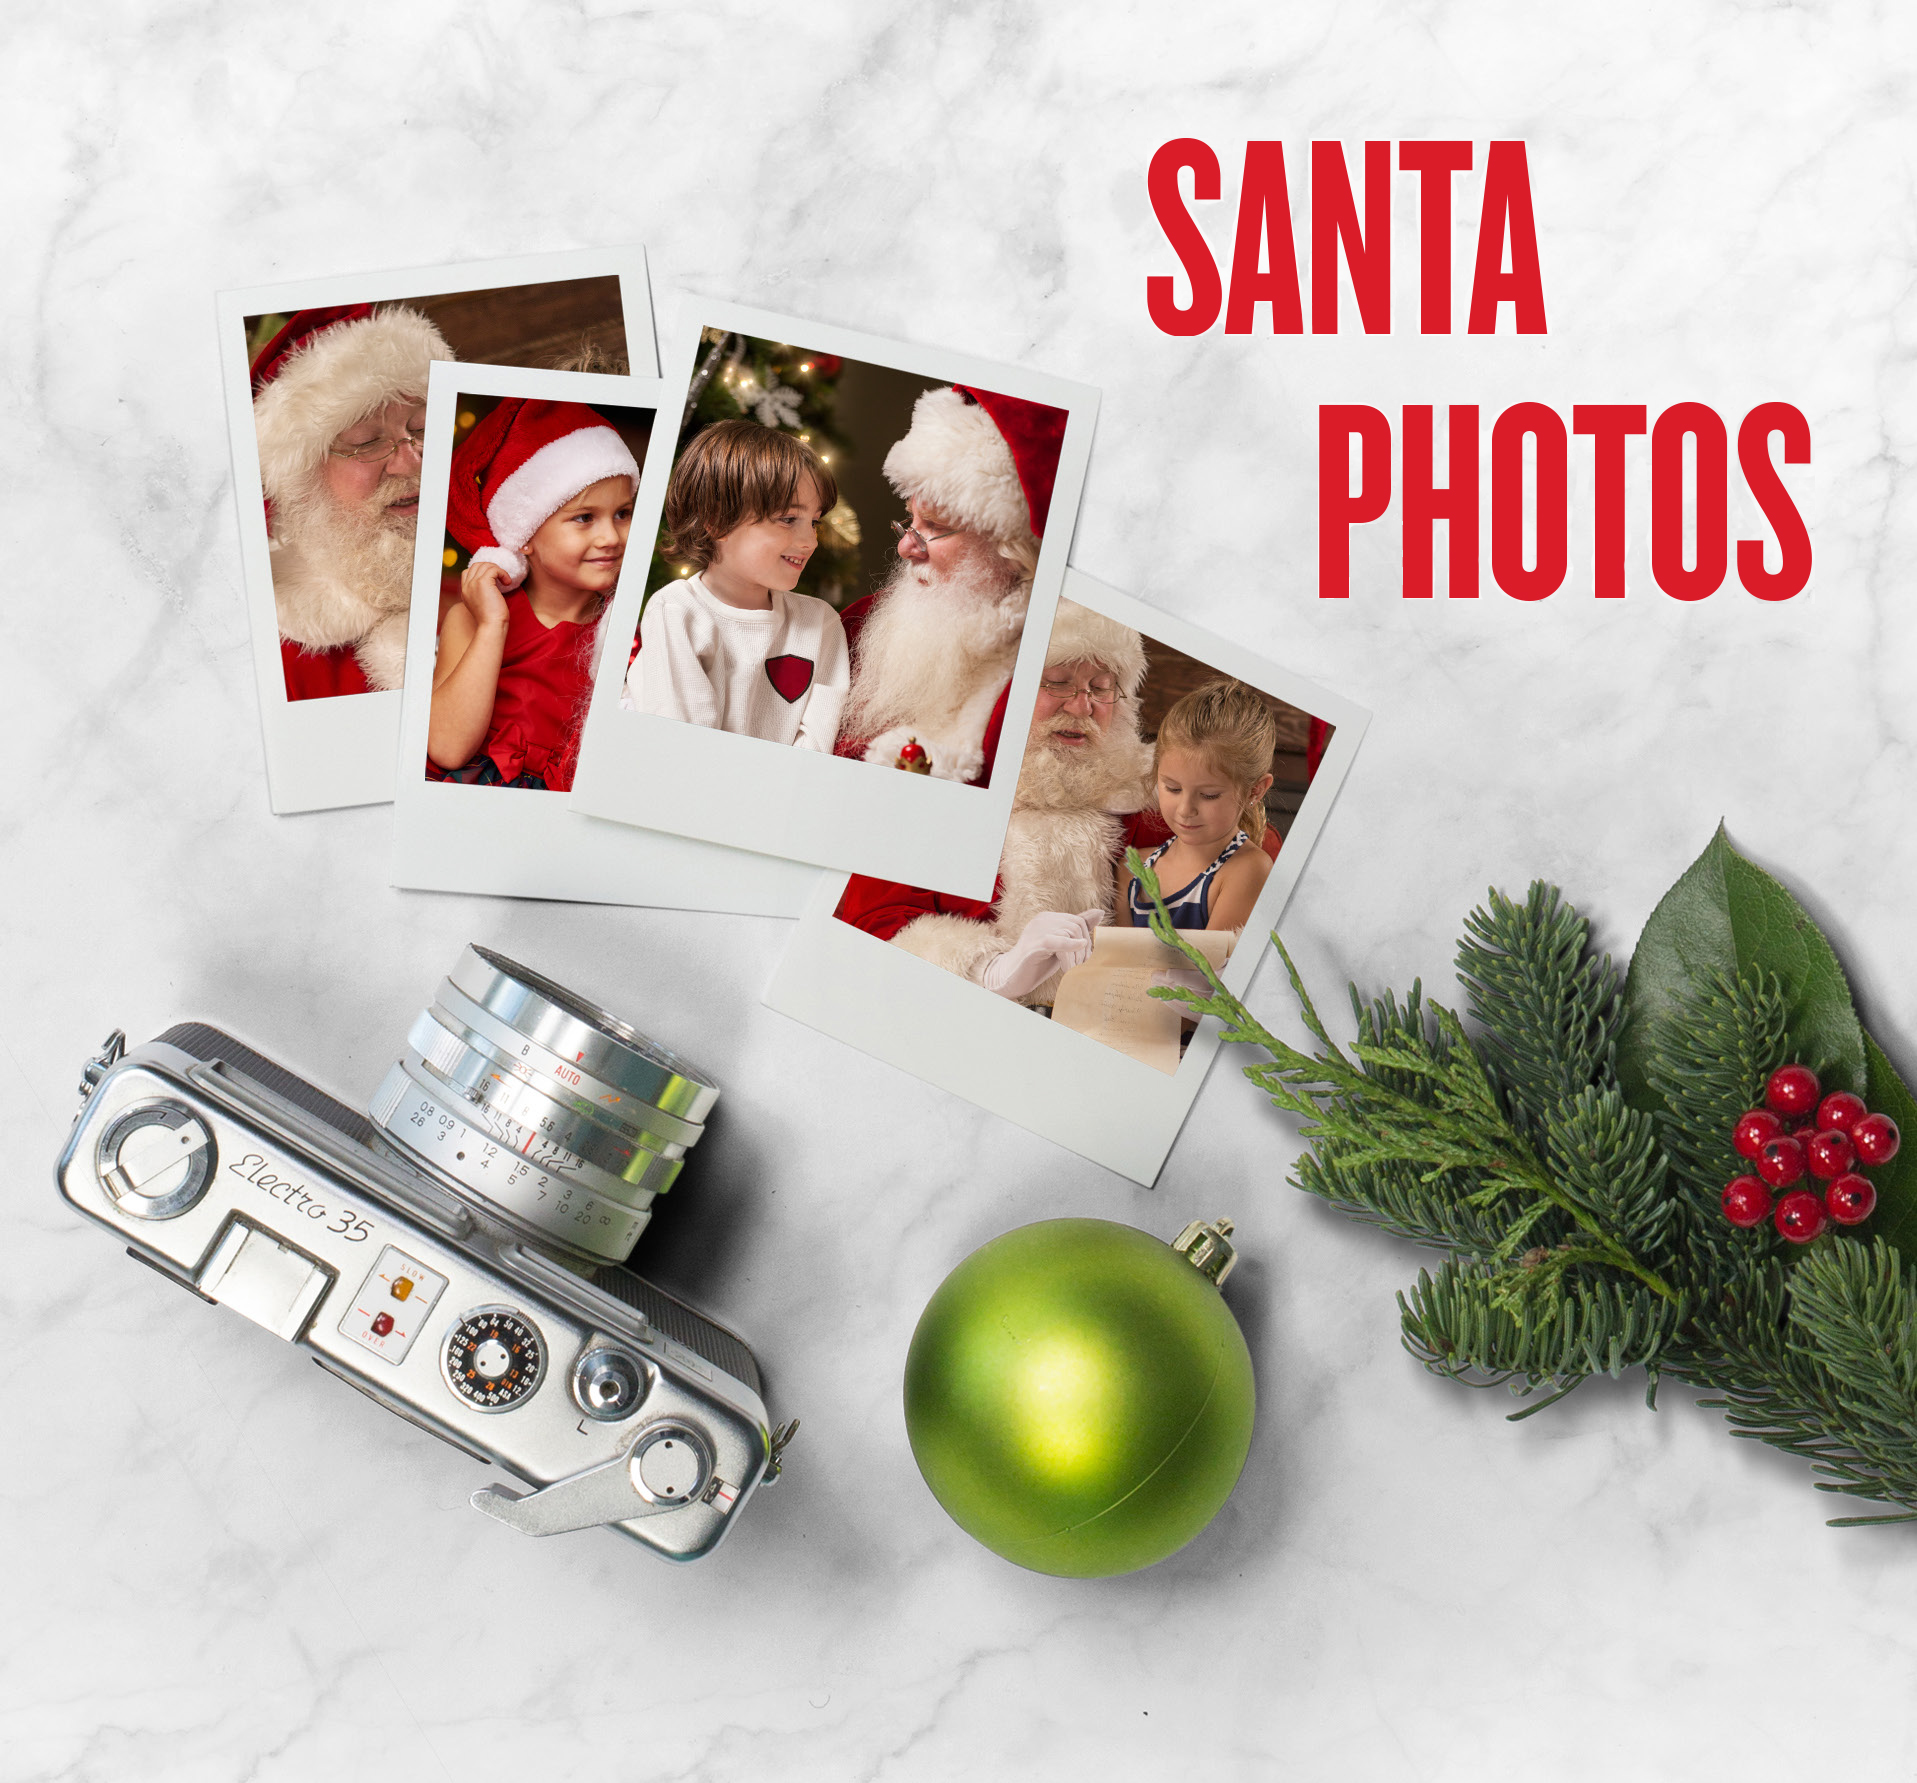 Santa Photos at Irvine Spectrum Center